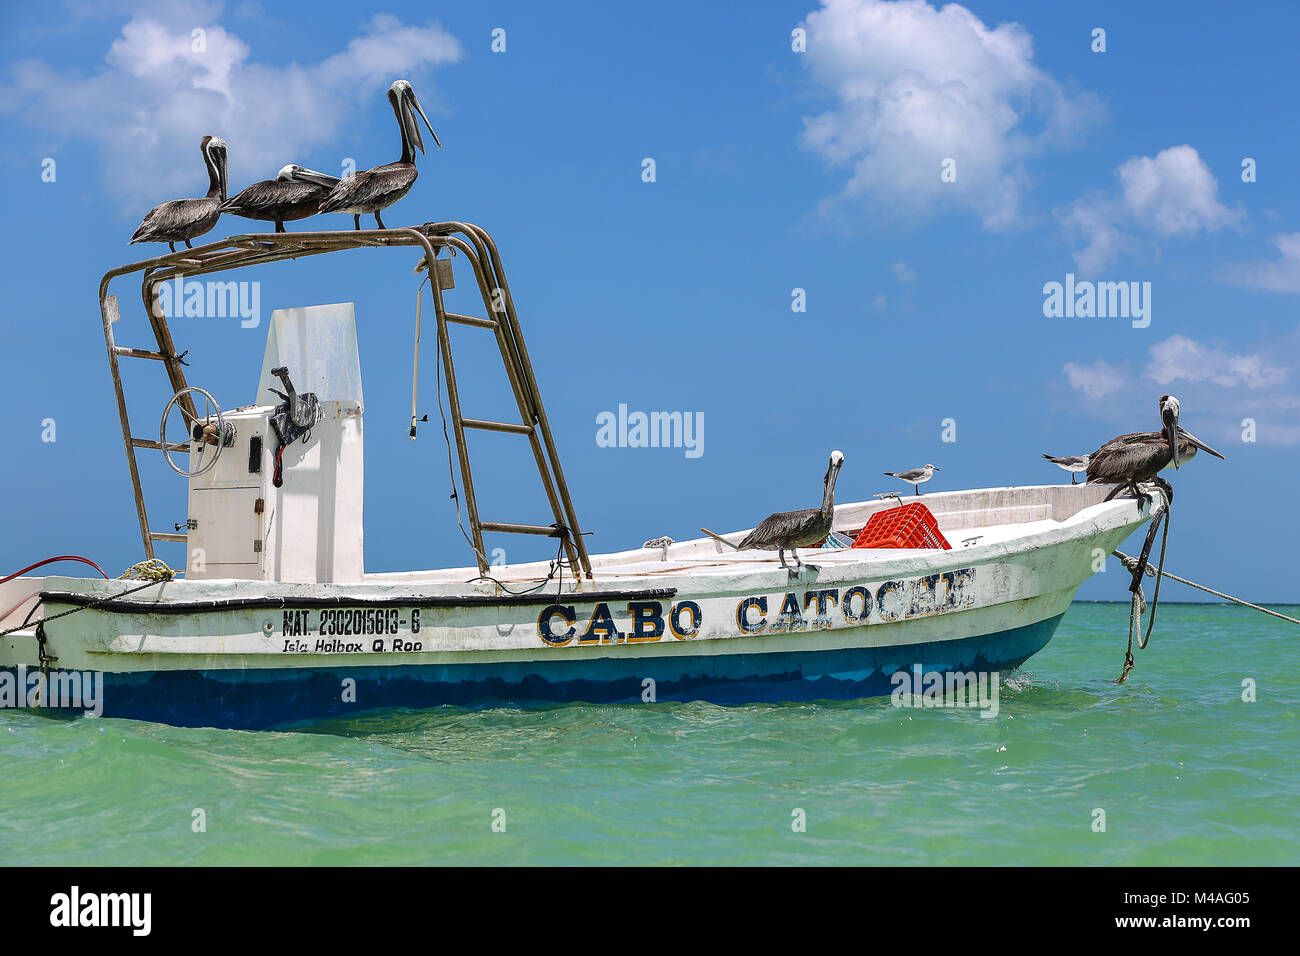 Cette promenade sur un bateau pelican. Banque D'Images